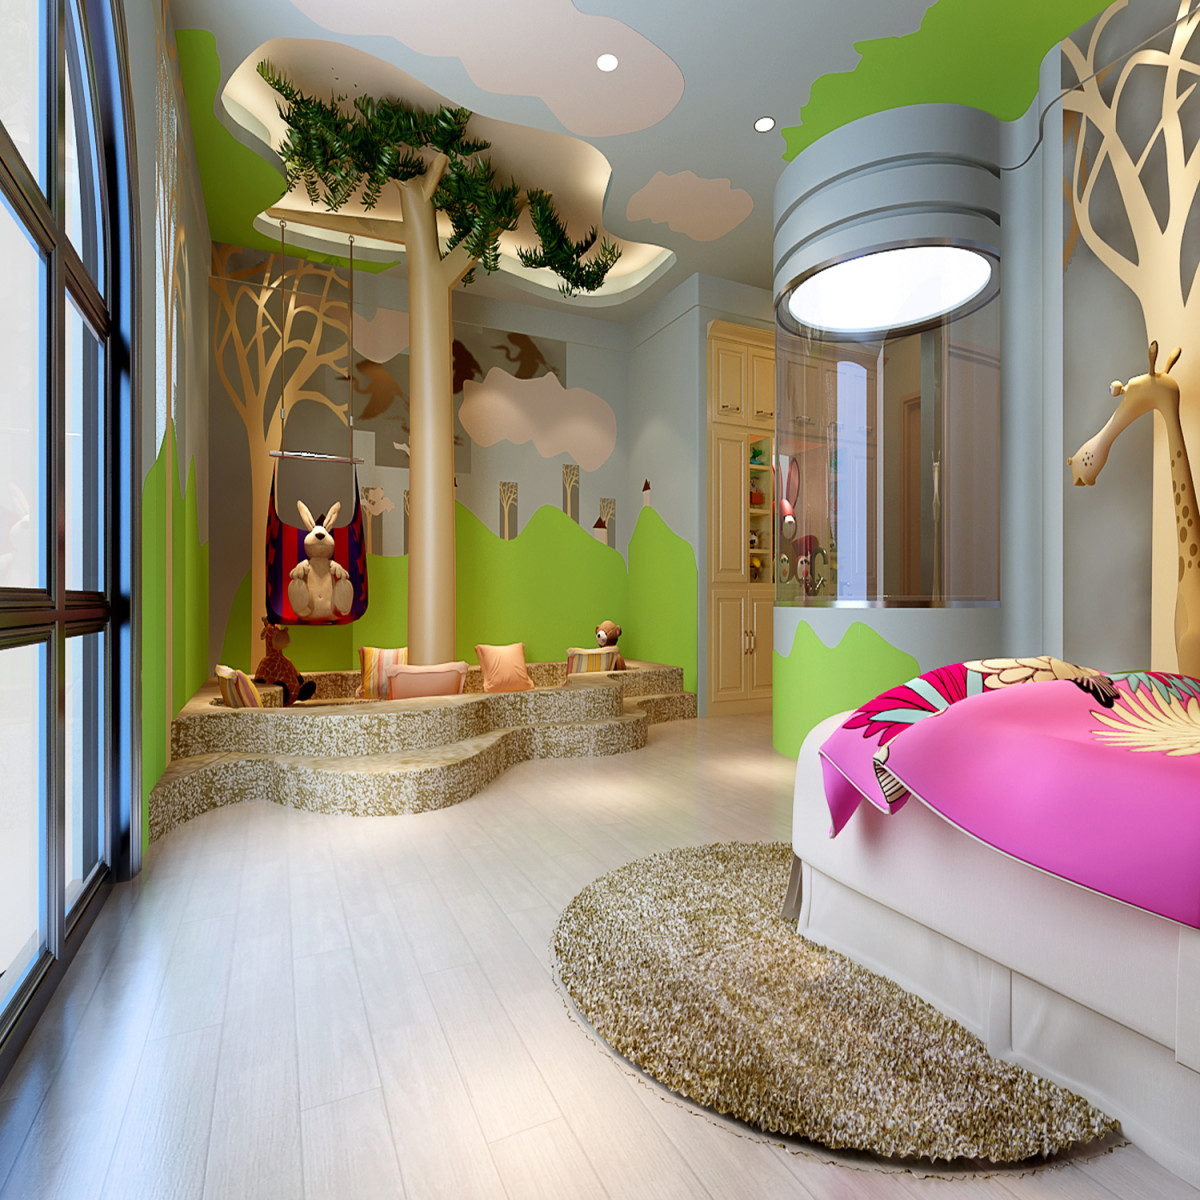 简约 混搭 二居 卧室图片来自重庆优家馆装饰在装修案例-【现代简约风格】的分享